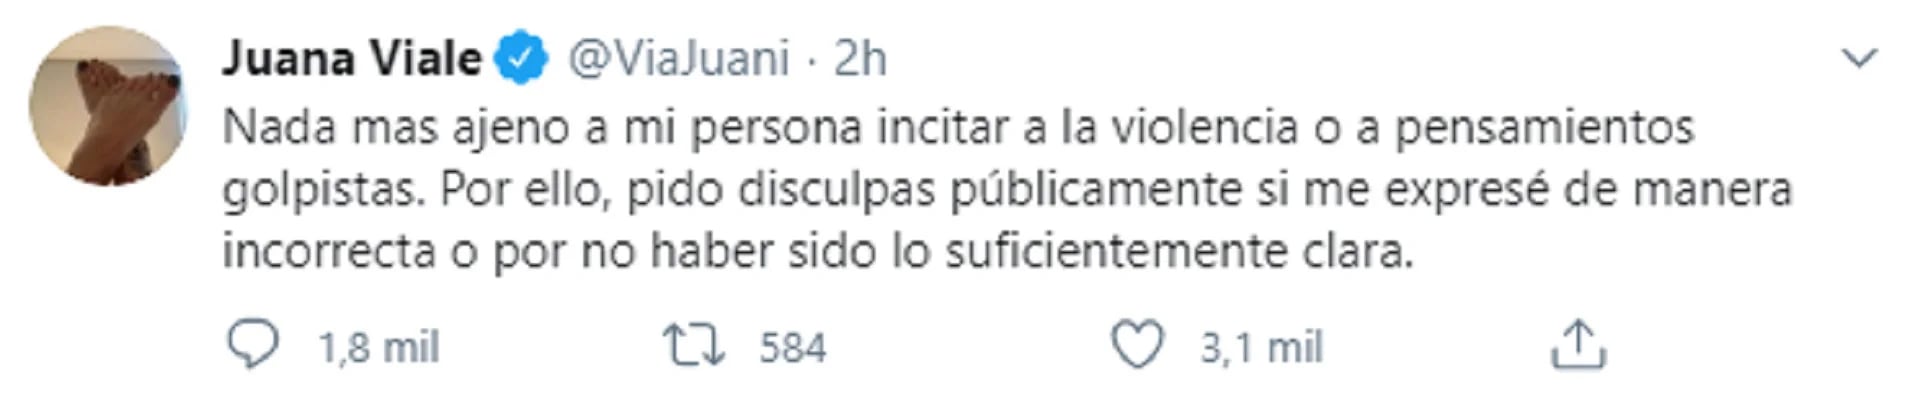 Tuit de Juana Viale donde pide disculpas por sus dichos